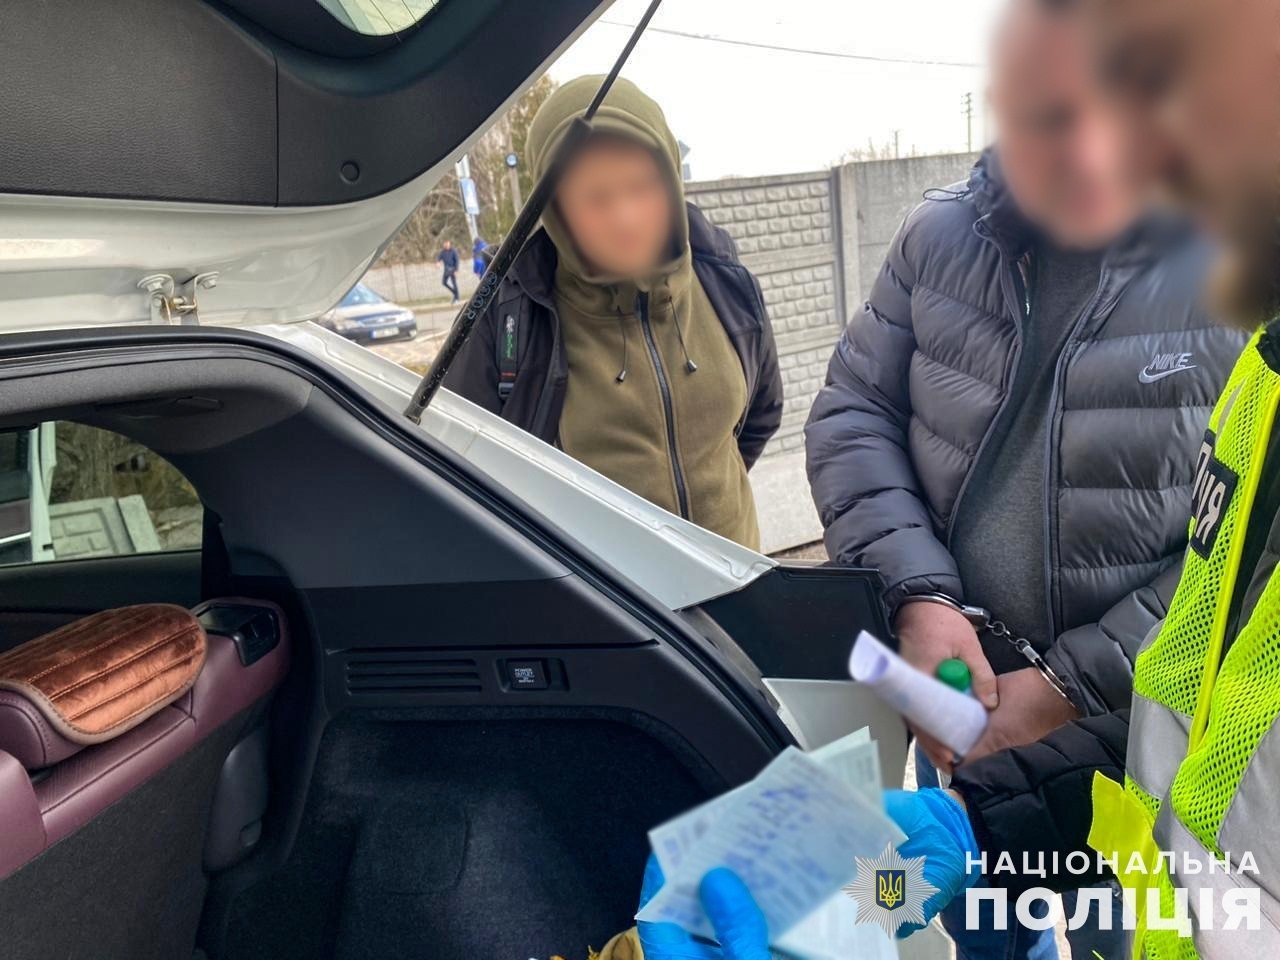 Вінницькі поліцейські викрили незаконну схему видачі водійських посвідчень